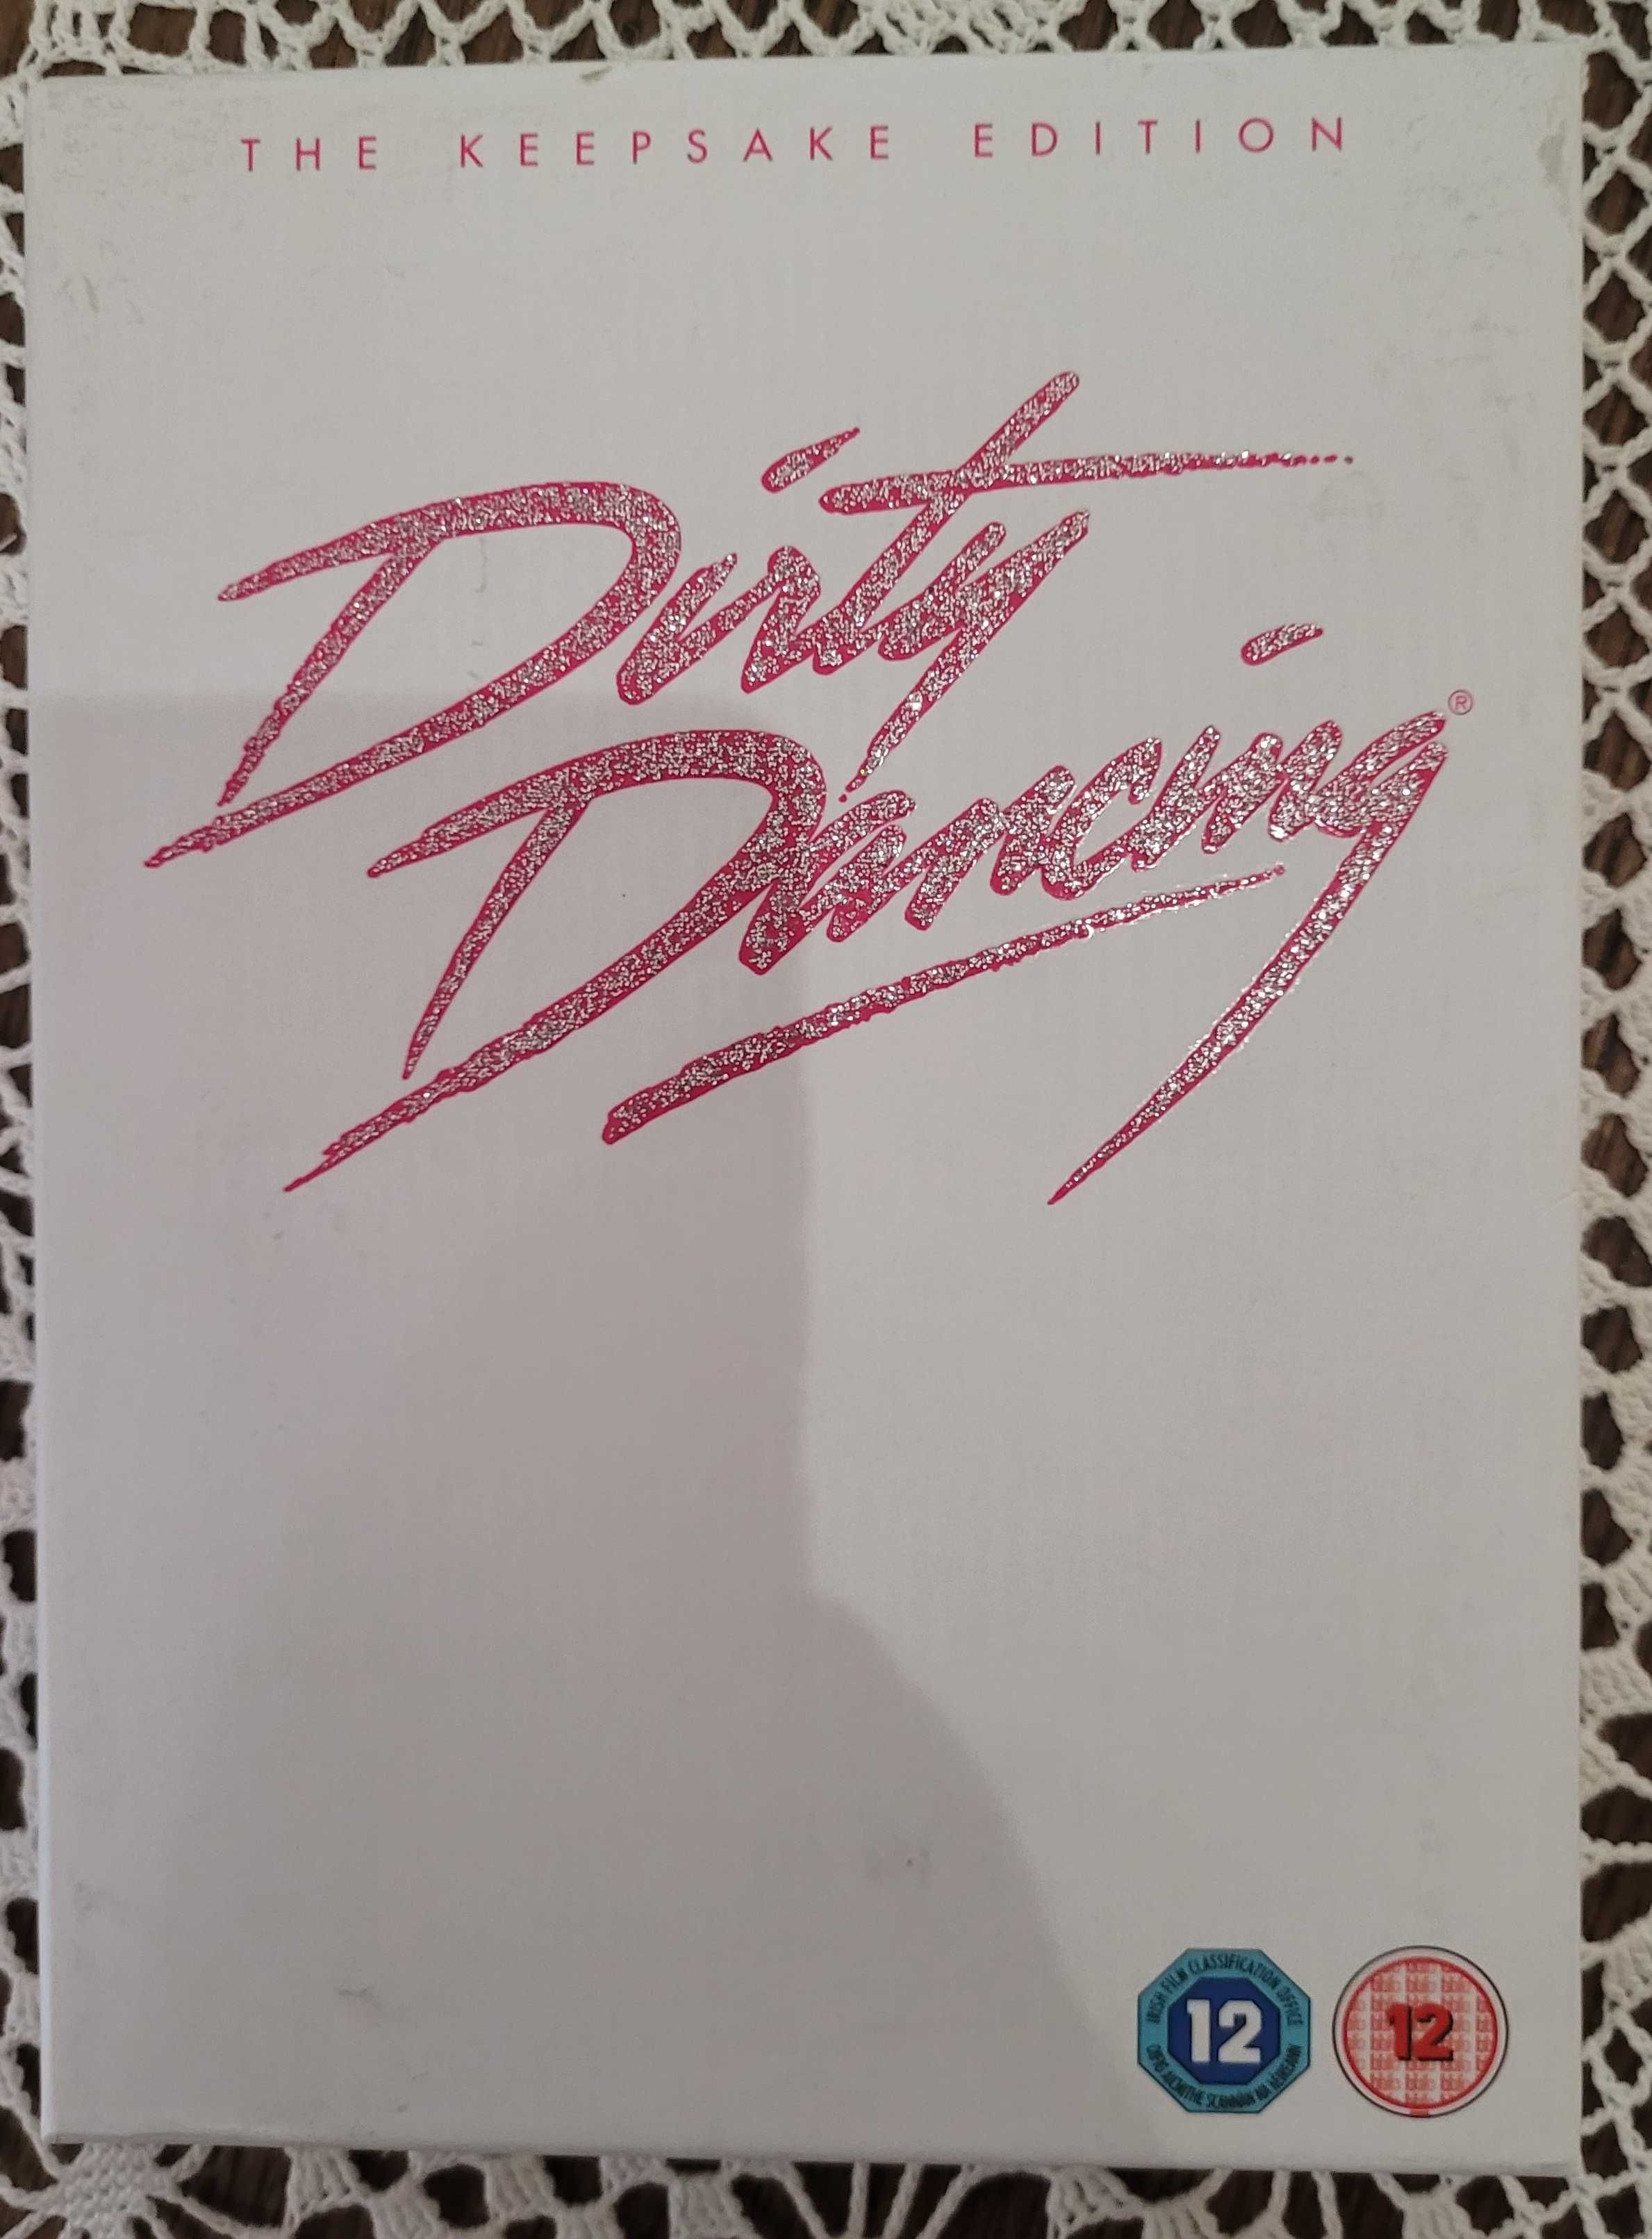 Dirty Dancing na DVD i Blu-ray wydanie kolekcjonerskie